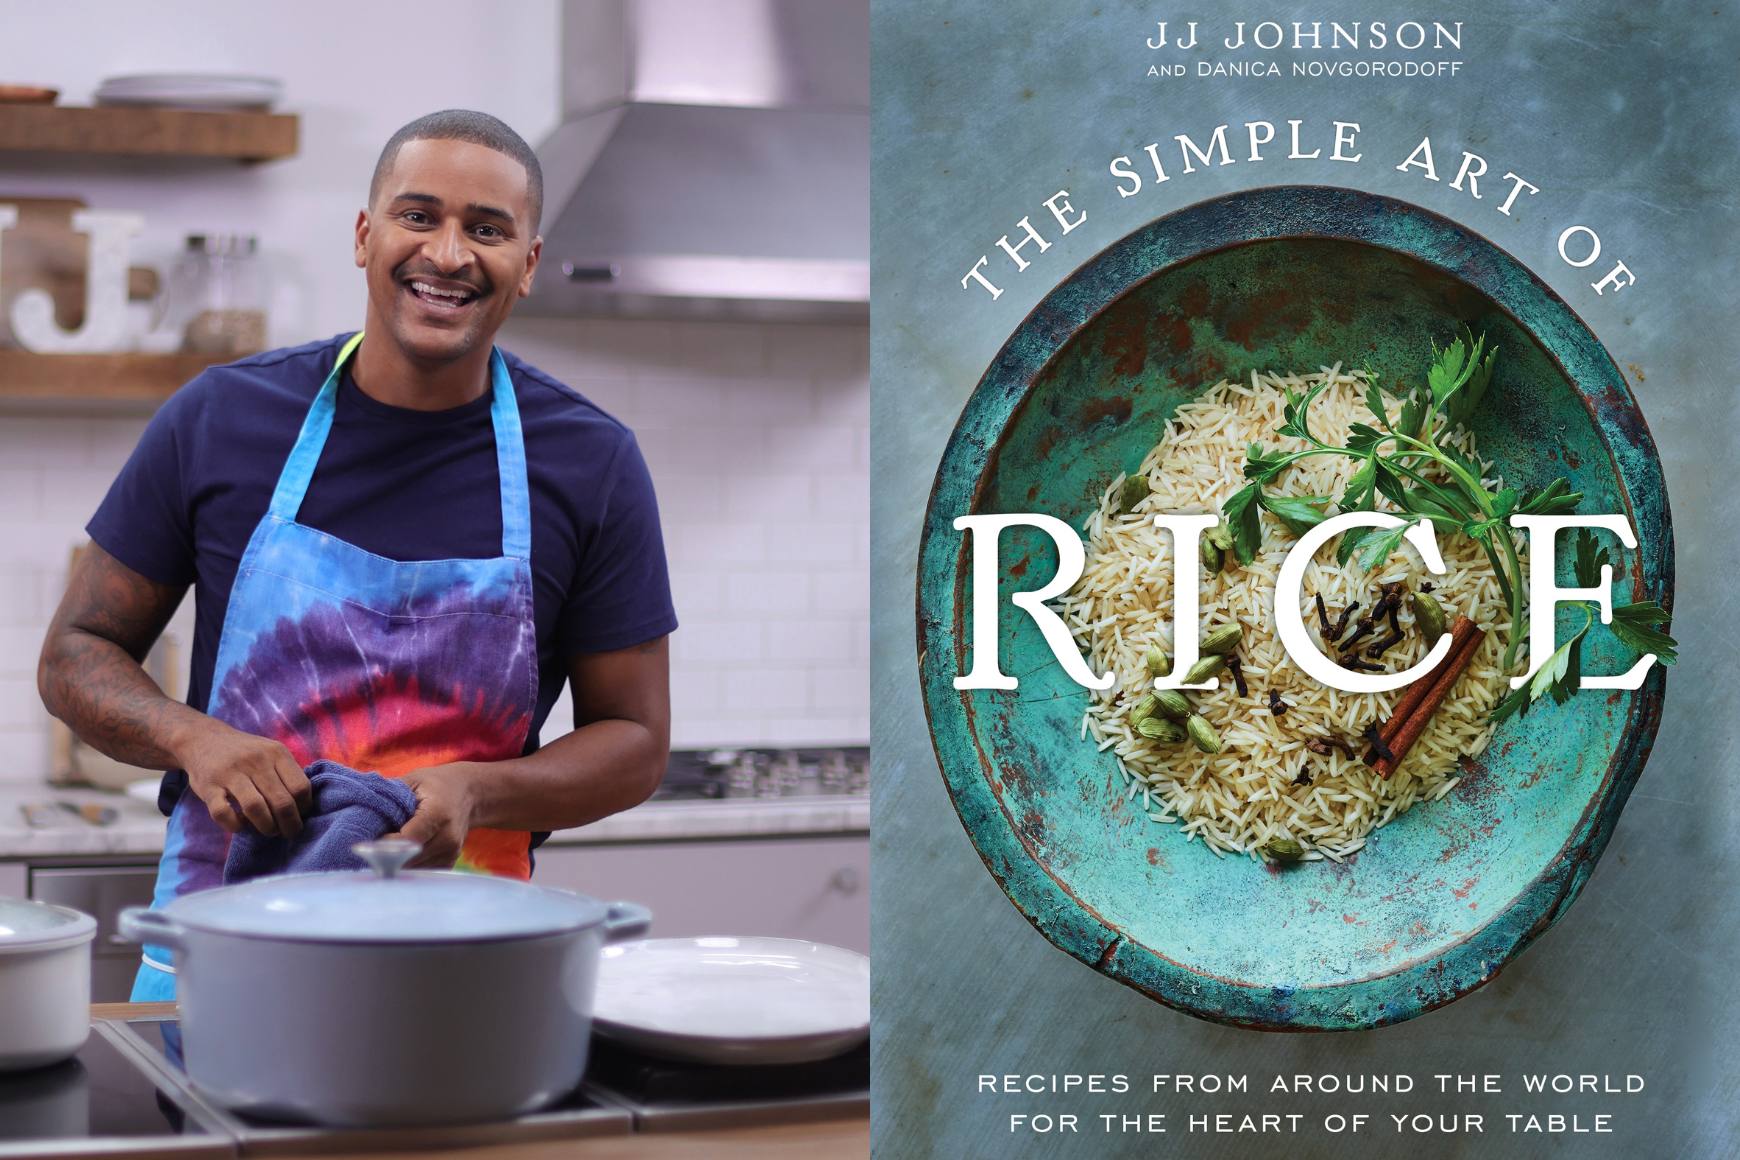 Uma colagem da arte do livro "The Simple Art of Rice" ao lado de uma foto do Chef JJ sorrindo em uma cozinha enquanto usava um avental tie dye de arco-íris.